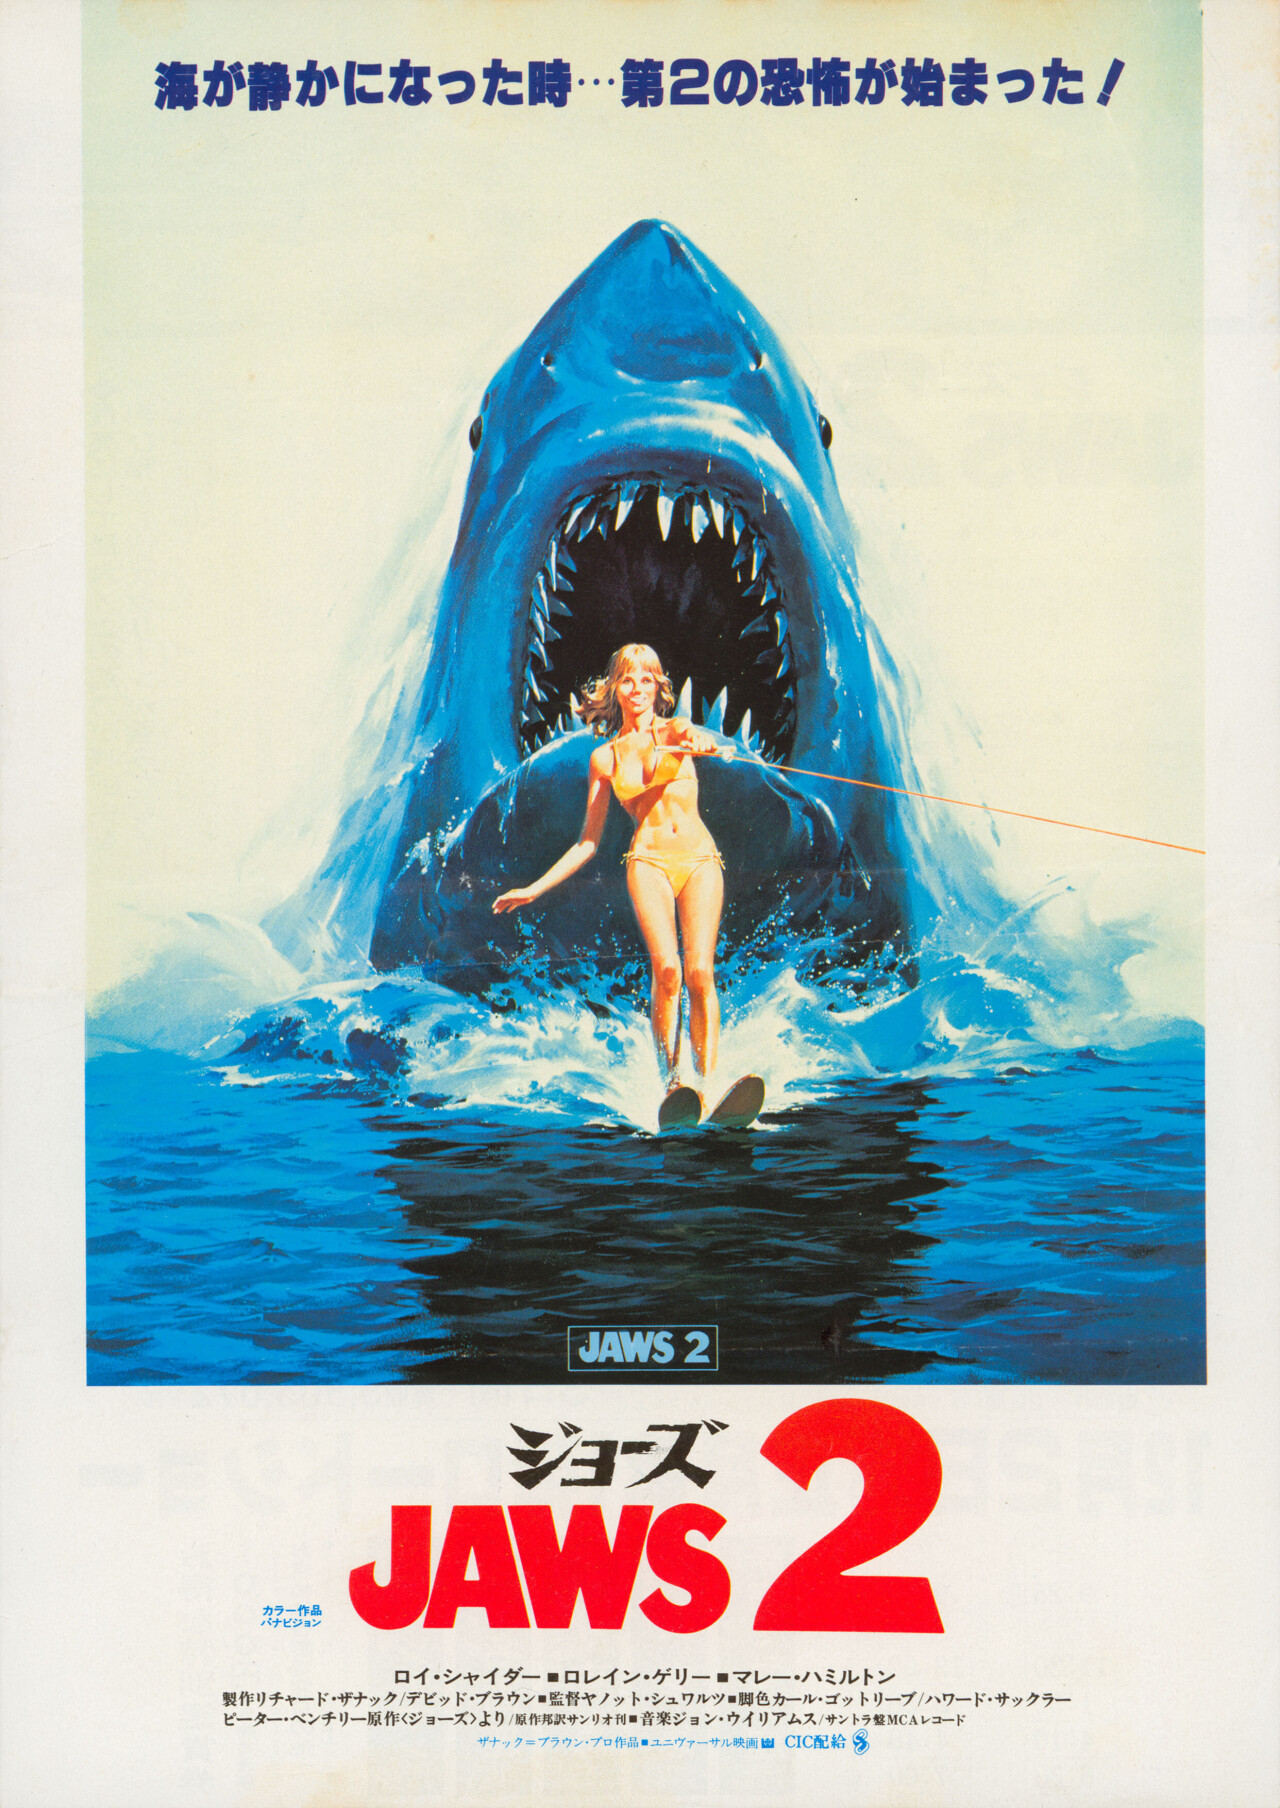 Челюсти 2 (Jaws 2, 1978), режиссёр Жанно Шварц, японский постер к фильму (ужасы, 1978 год)